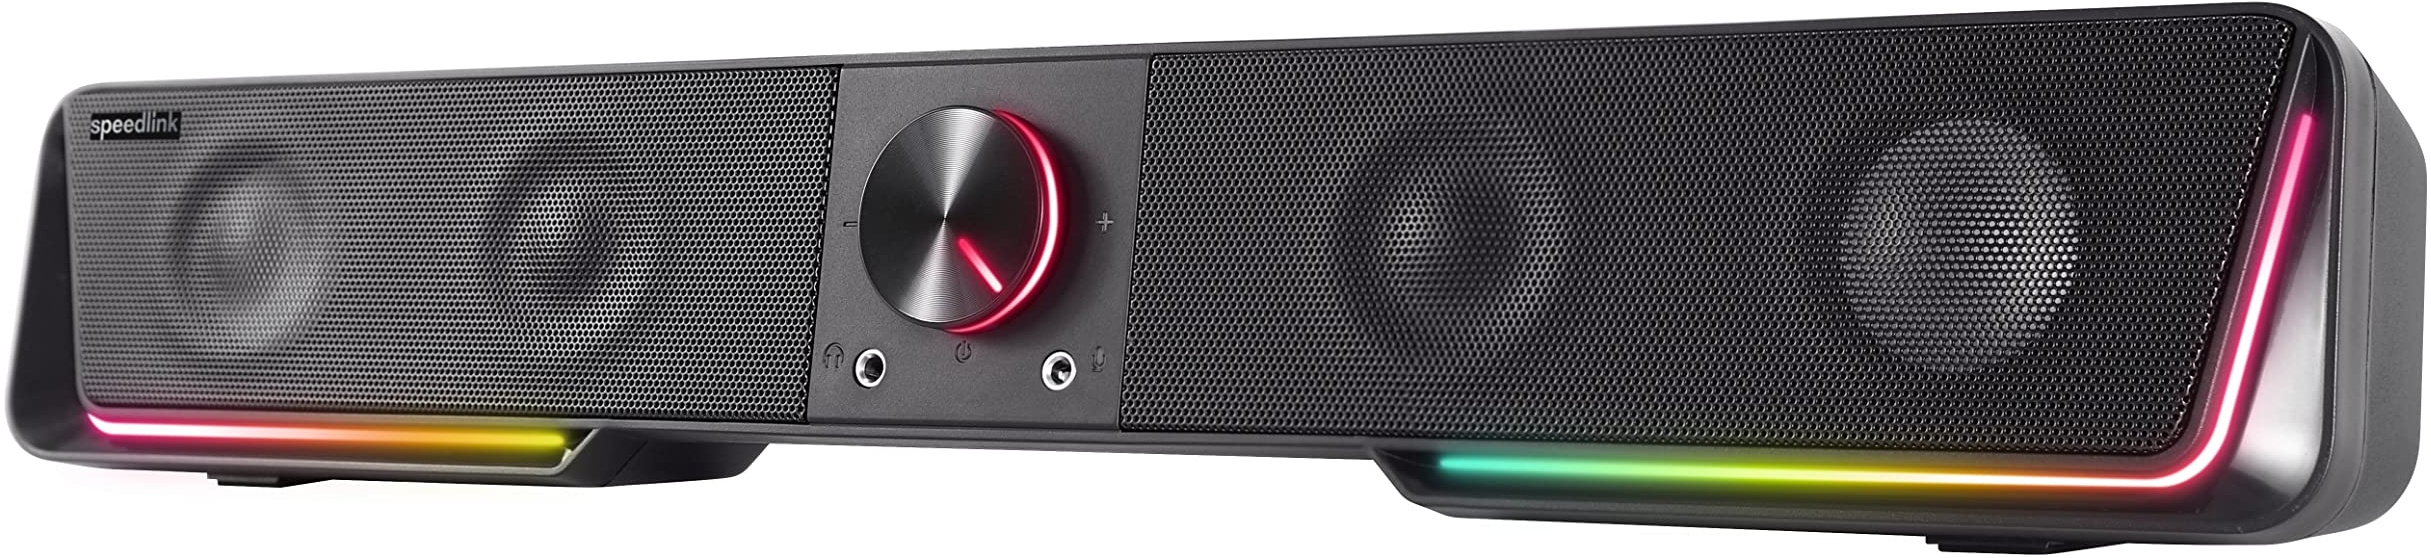 Speedlink Gravity RGB Stereo Soundbar – Lautsprecher mit Bluetooth-Verbindung für Smartphone/Tablet – RGB Beleuchtung – Kopfhörer- und Mikrofonanschluss, schwarz, SL-830200-BK